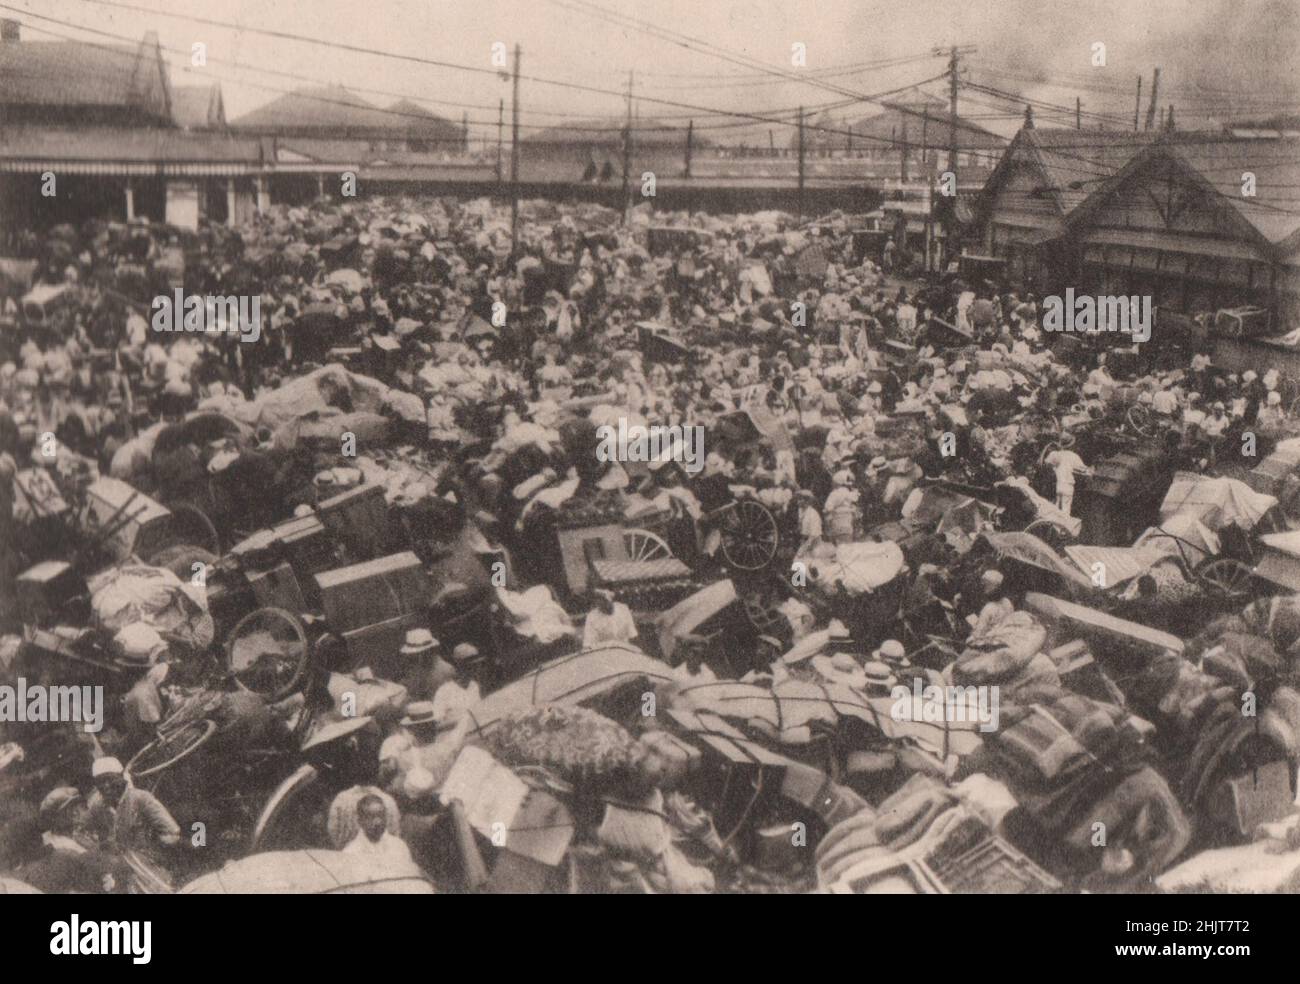 Terremoto de Japón 1923: Multitudes de refugiados se reunieron en el barrio de la estación de tren de Uyeno Foto de stock